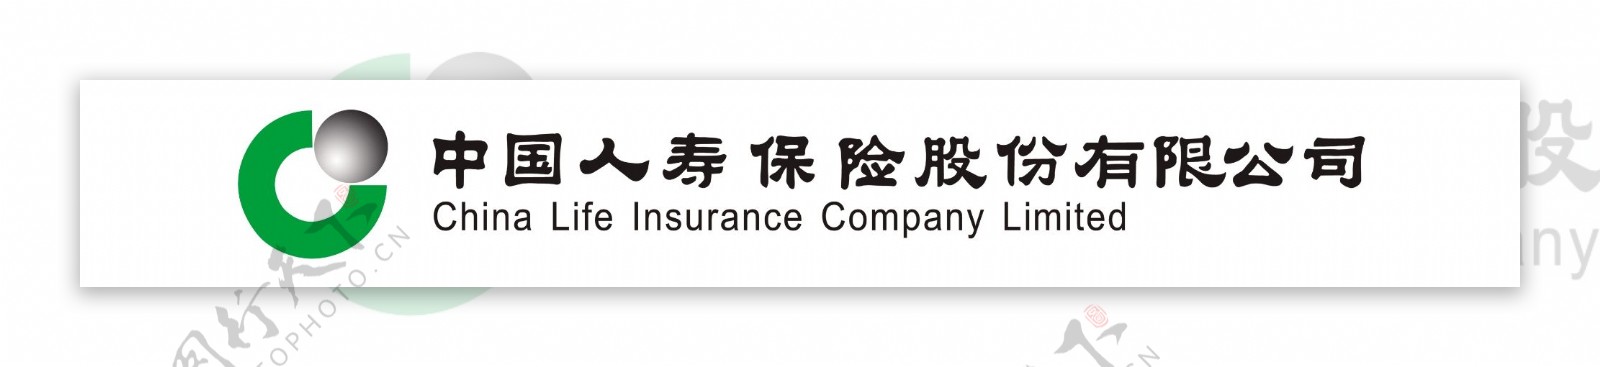 中国人寿保险股份有限公司图片